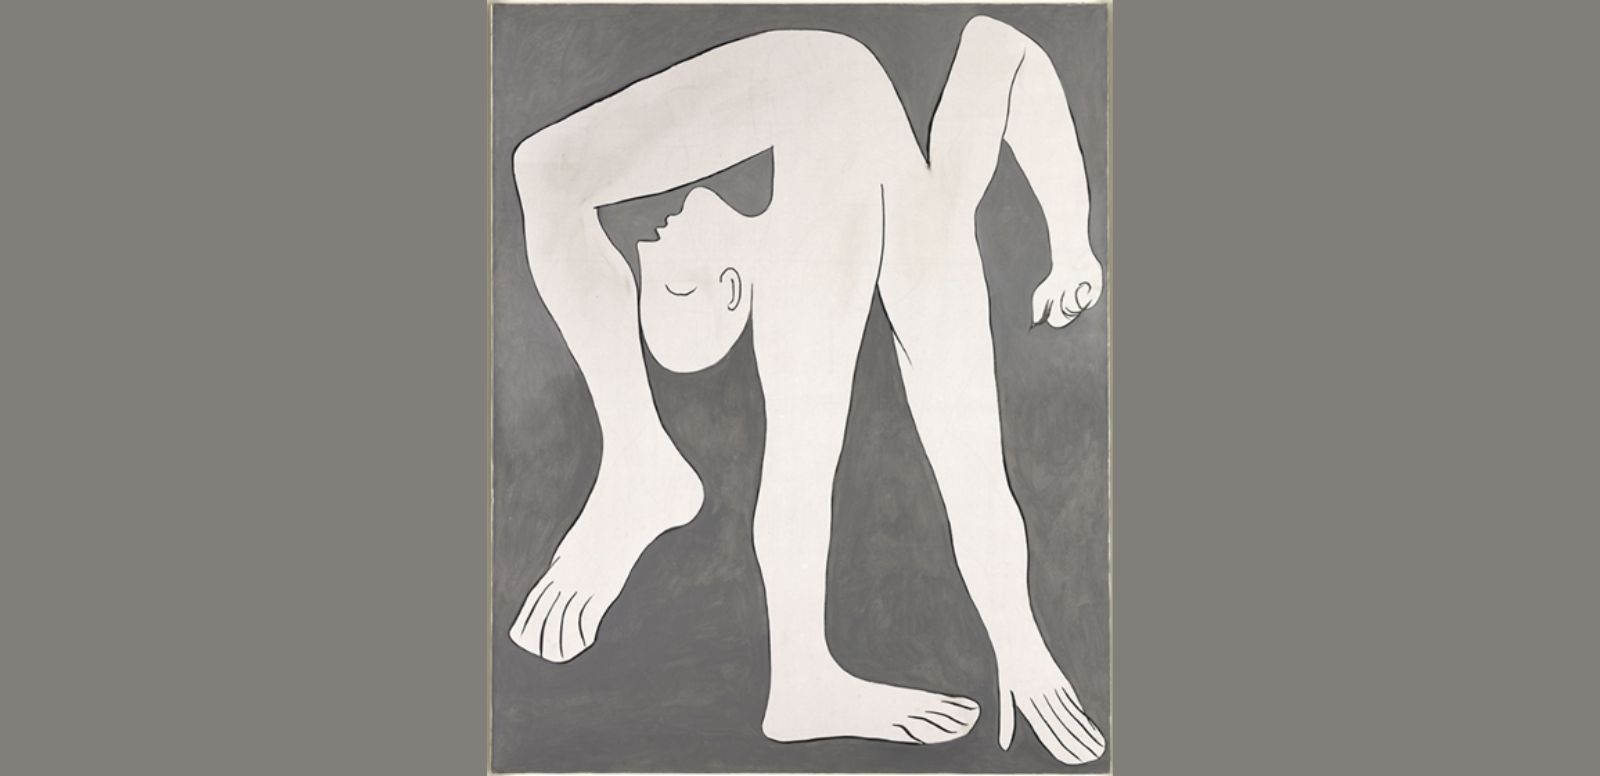 Pablo Picasso, "El acróbata", 1930, 